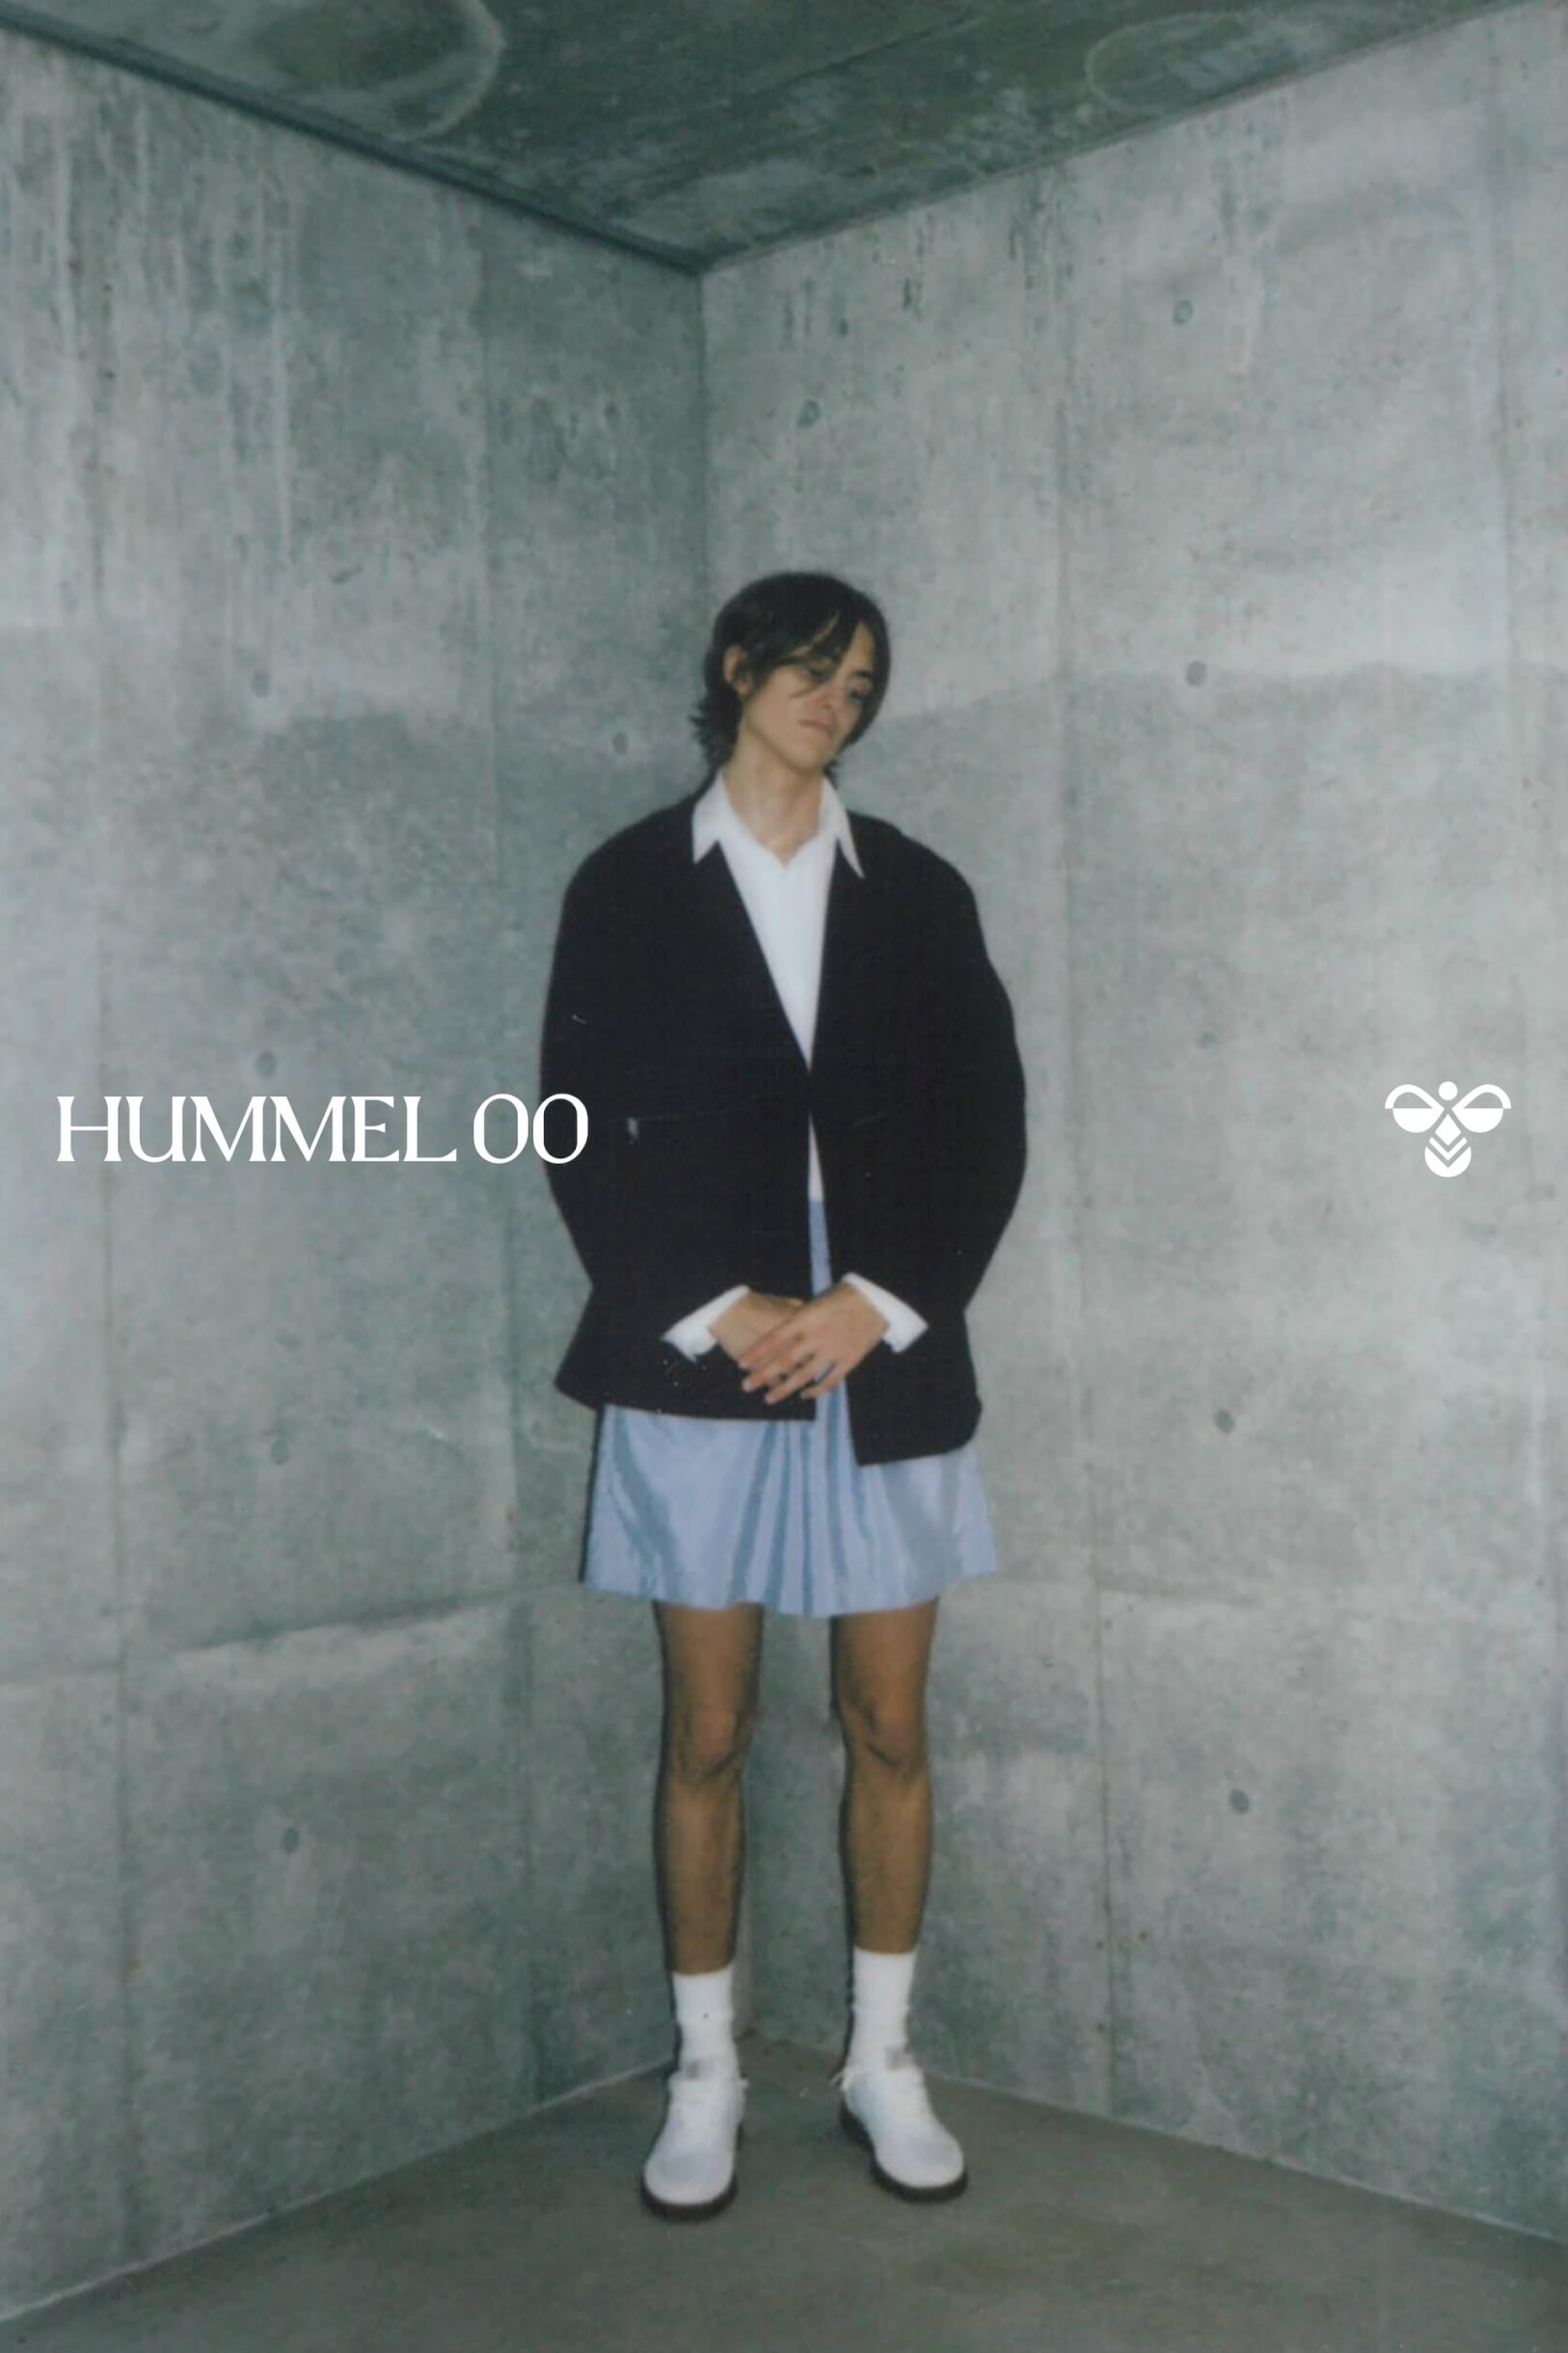 HUMMEL 00